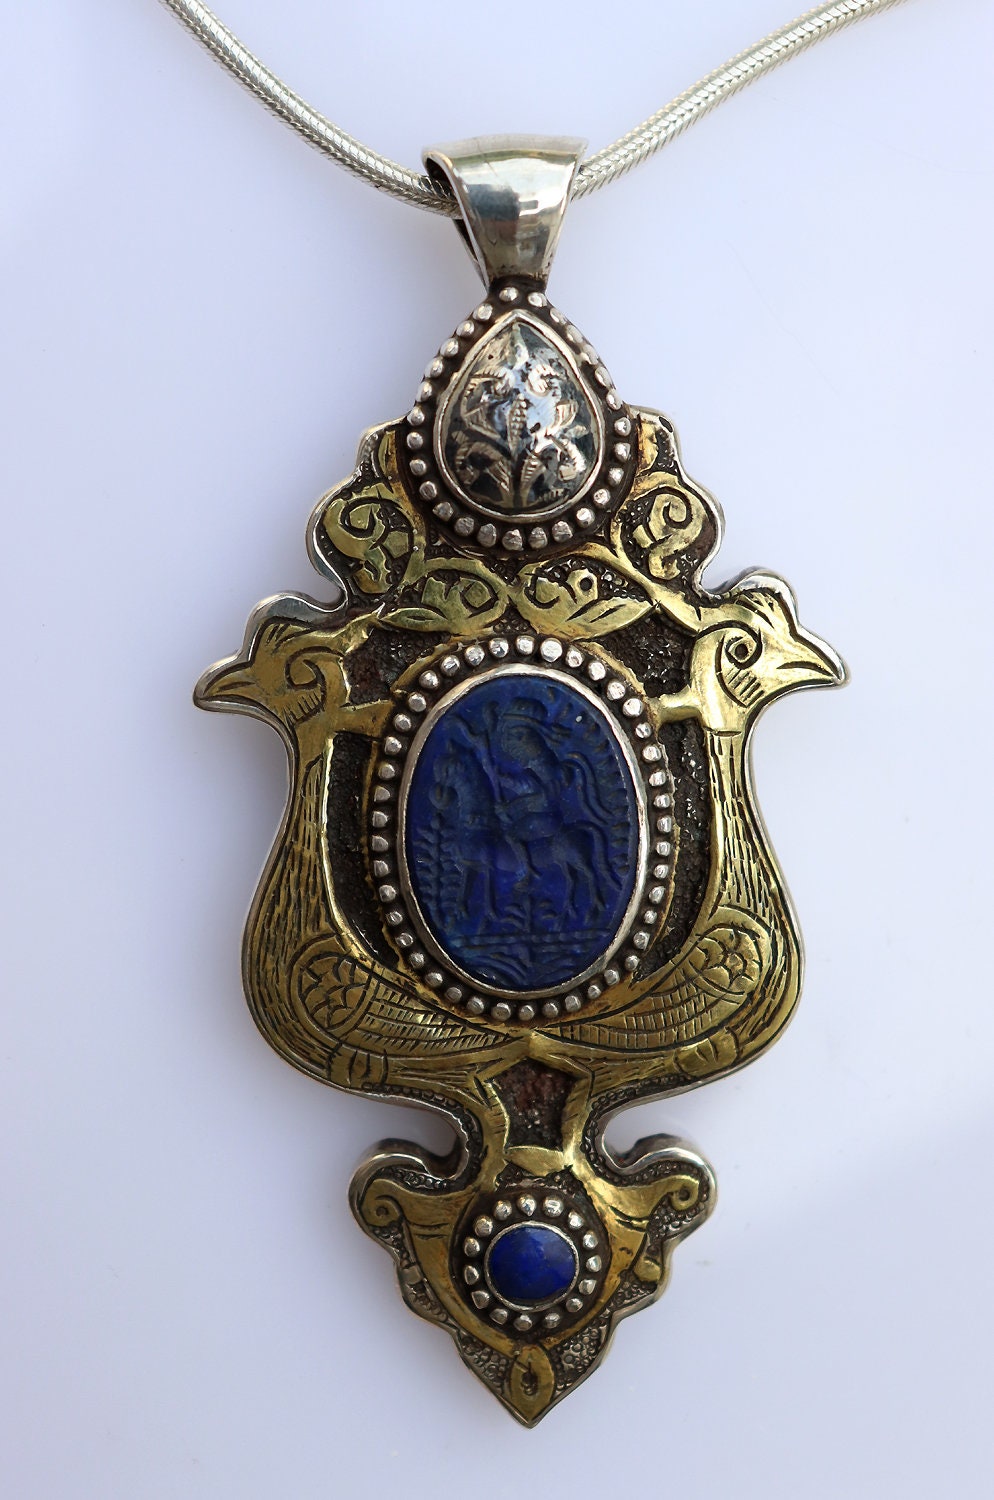 extravagant handgefetigt Massiv Silber Turkmen feuer vergoldet Lapis lazuli Siegelstein Haslkette mit Anhänger aus Afghanistan Nr-22/WL7  Orientsbazar   